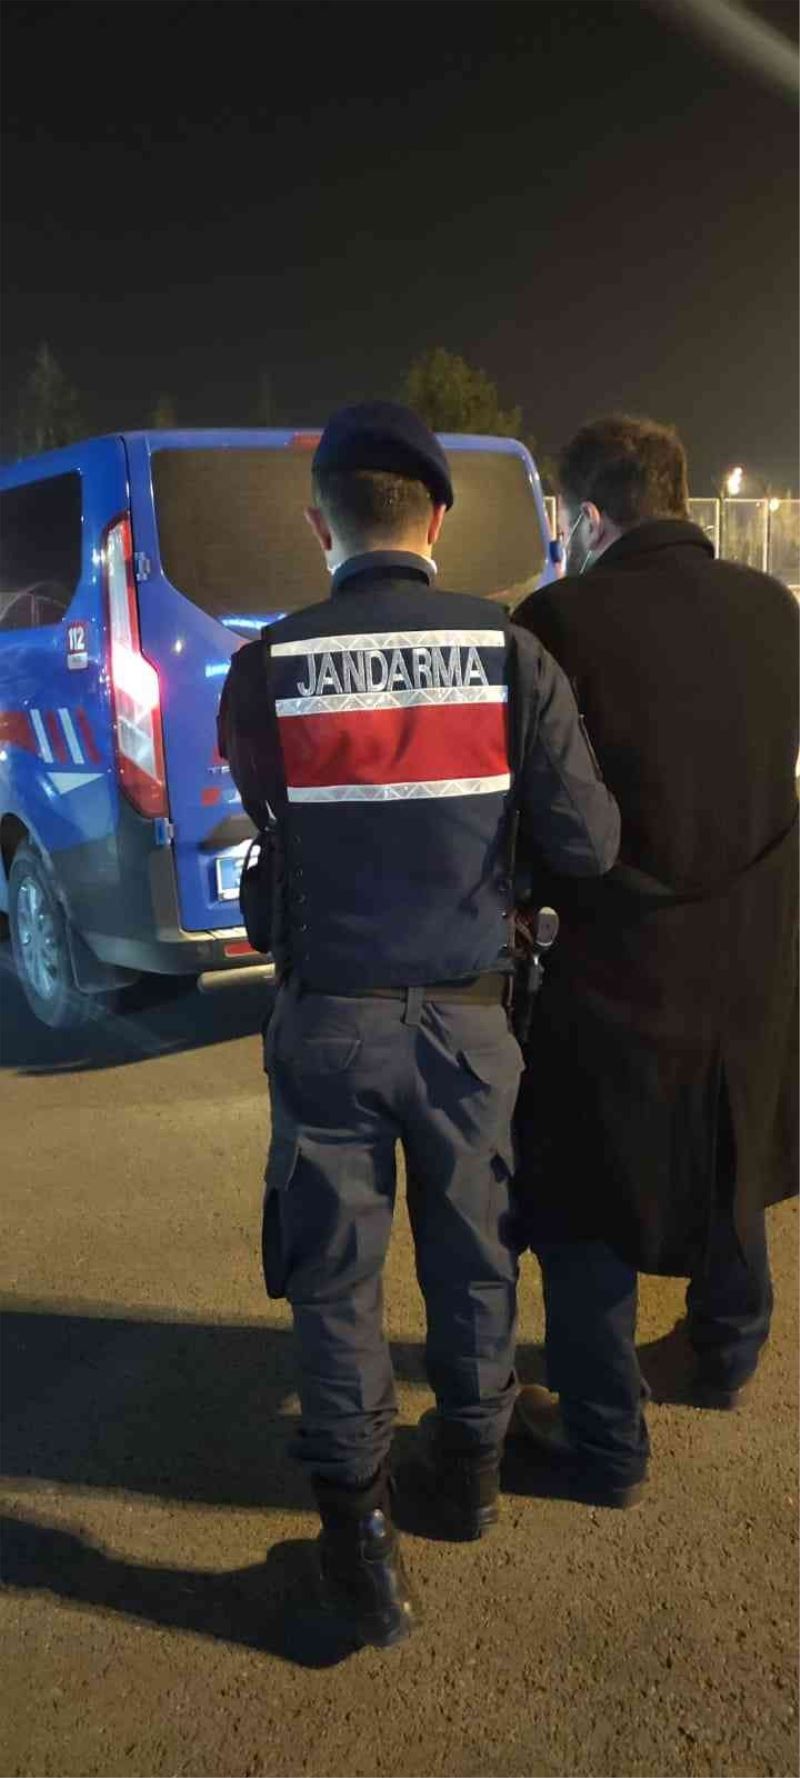 Jandarma 14 faili meçhul hırsızlık olayını aydınlattı
